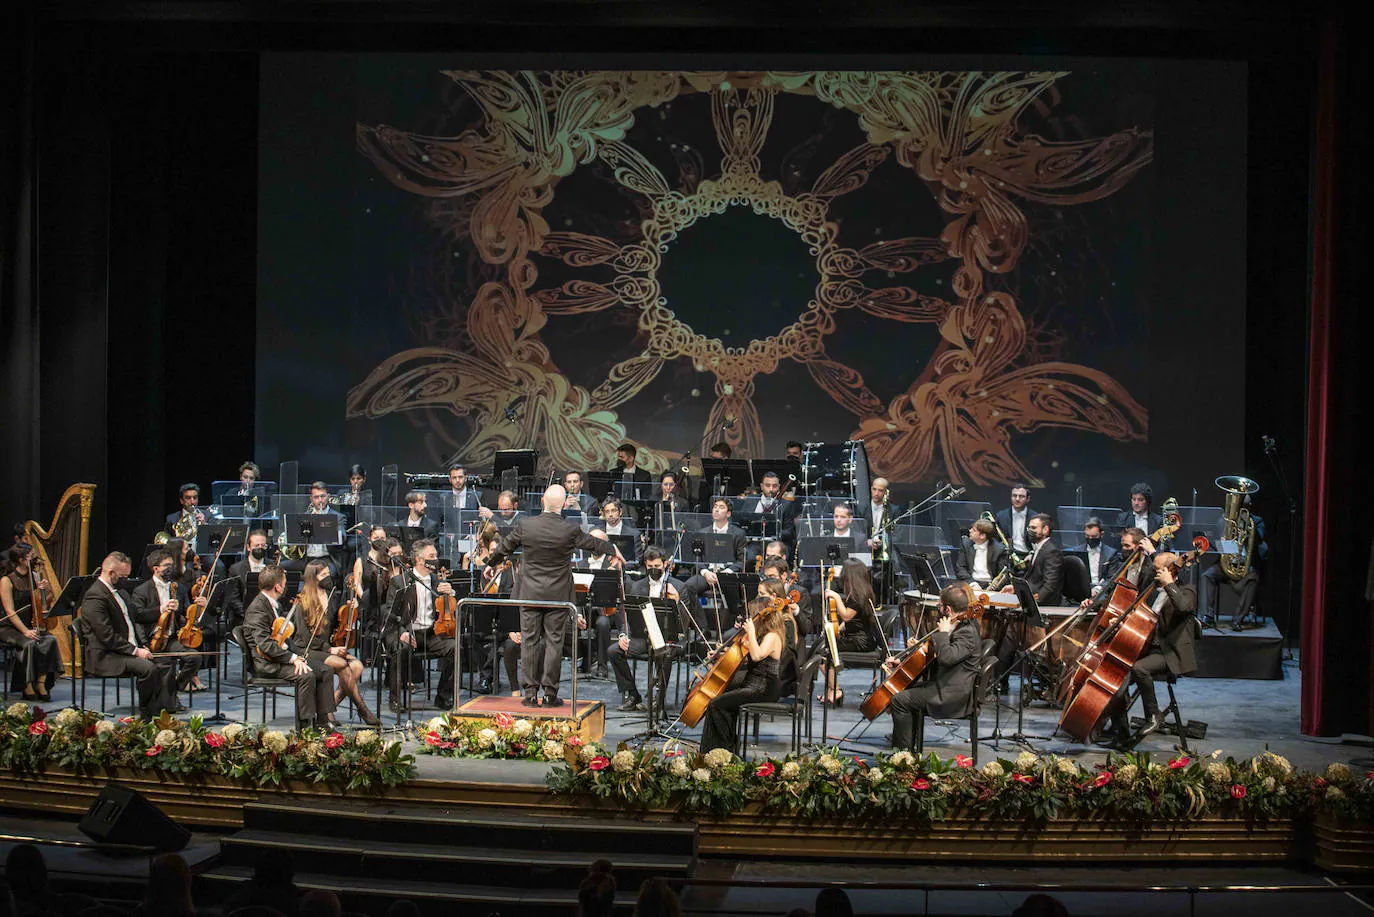 Imagen principal - Valses y polkas de la familia Strauss fueron interpretadas por la OCAL, bajo la dirección de Michael Thomas y la participación de un espectacular Antonio Serrano. 